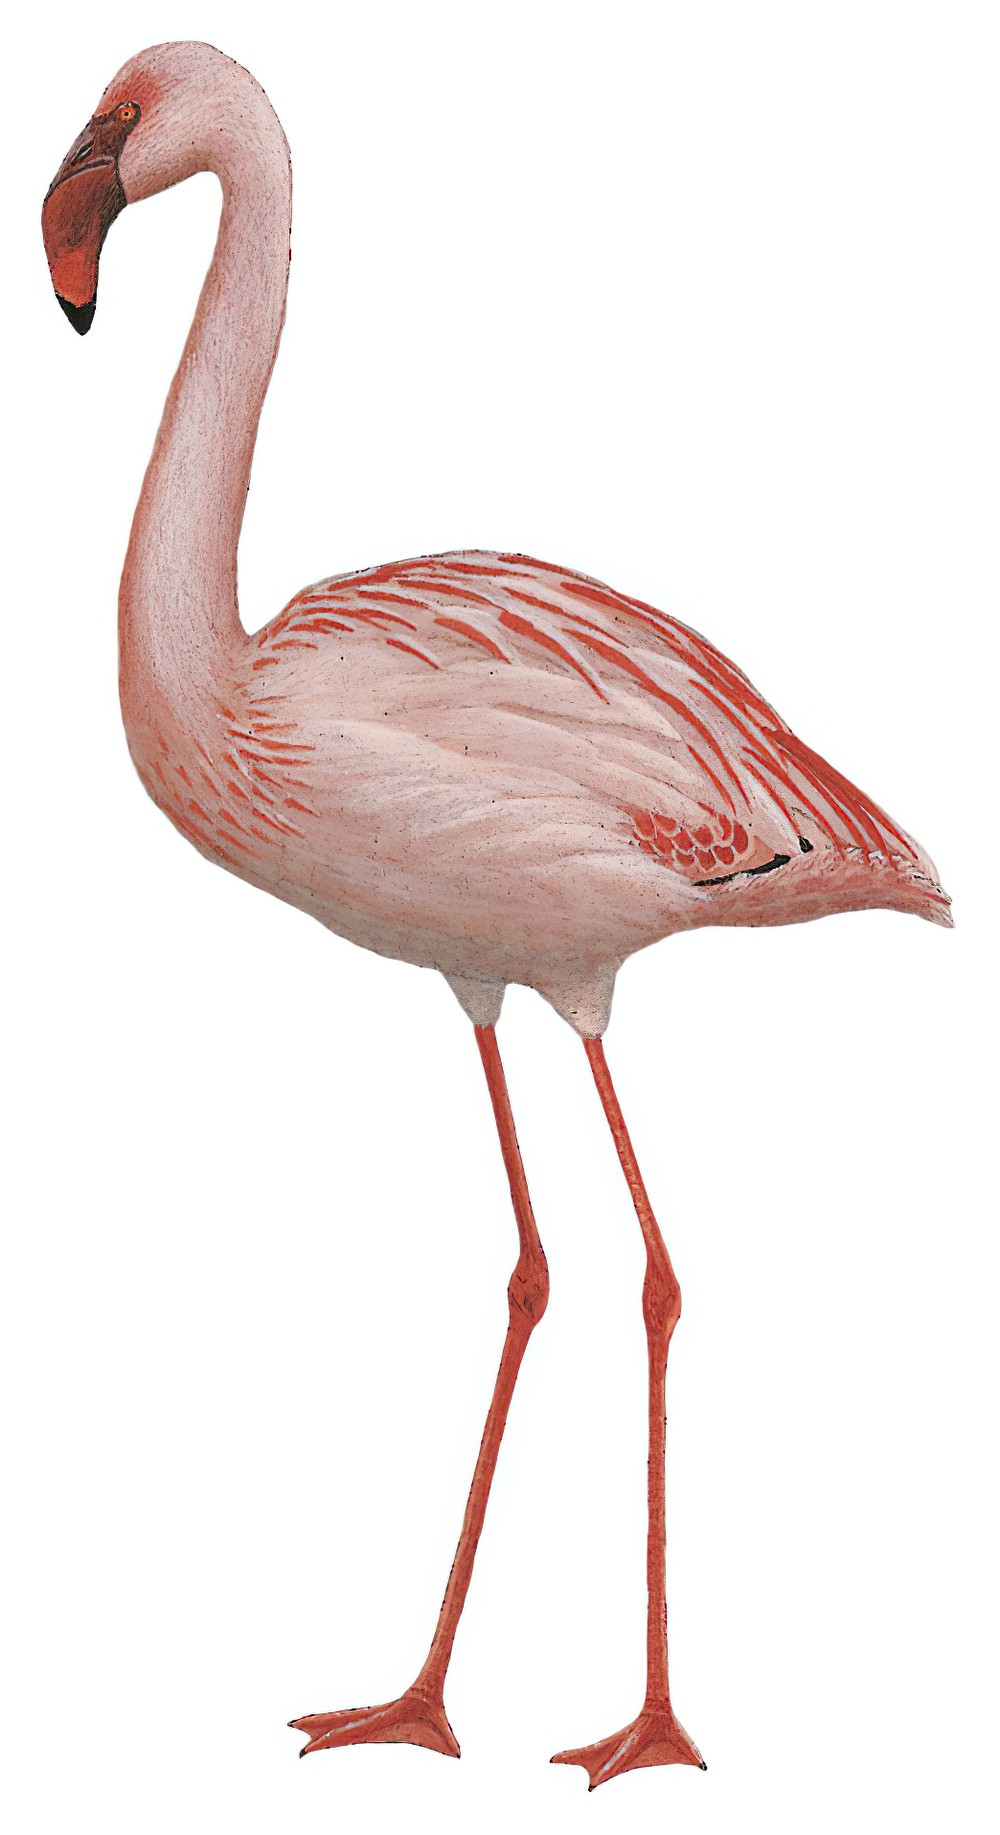 Lesser Flamingo / Phoeniconaias minor